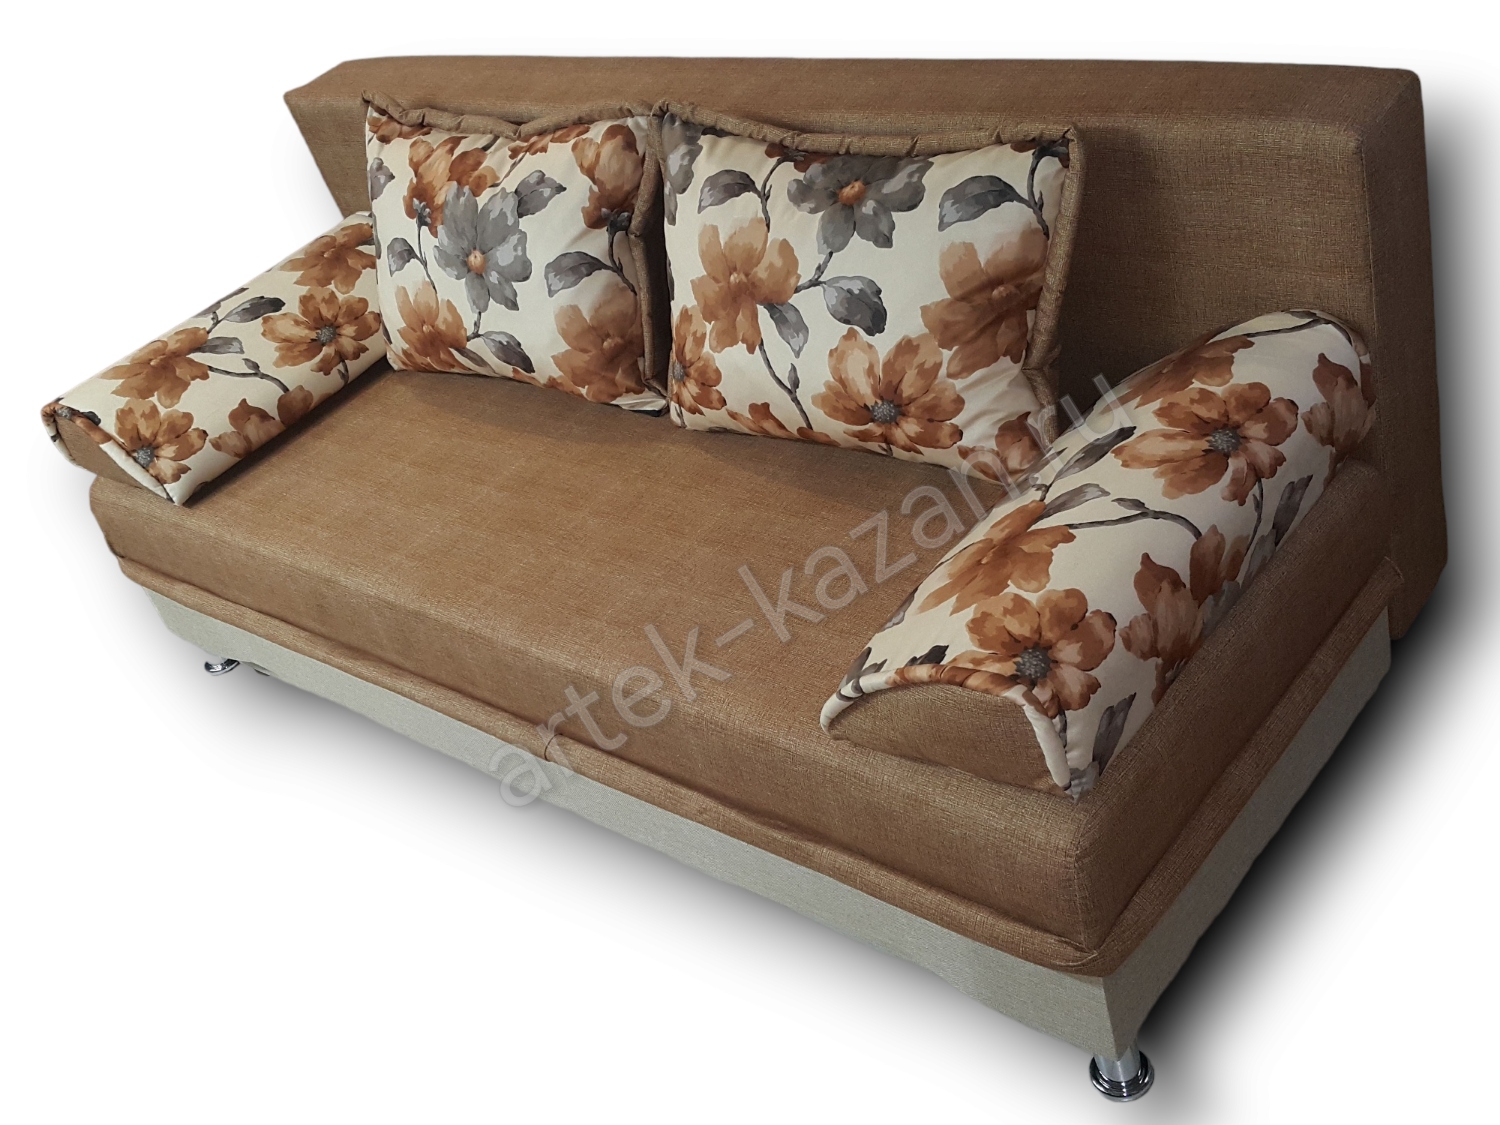 диван еврокнижка Эконом фото № 46. Купить недорогой диван по низкой цене от производителя можно у нас.